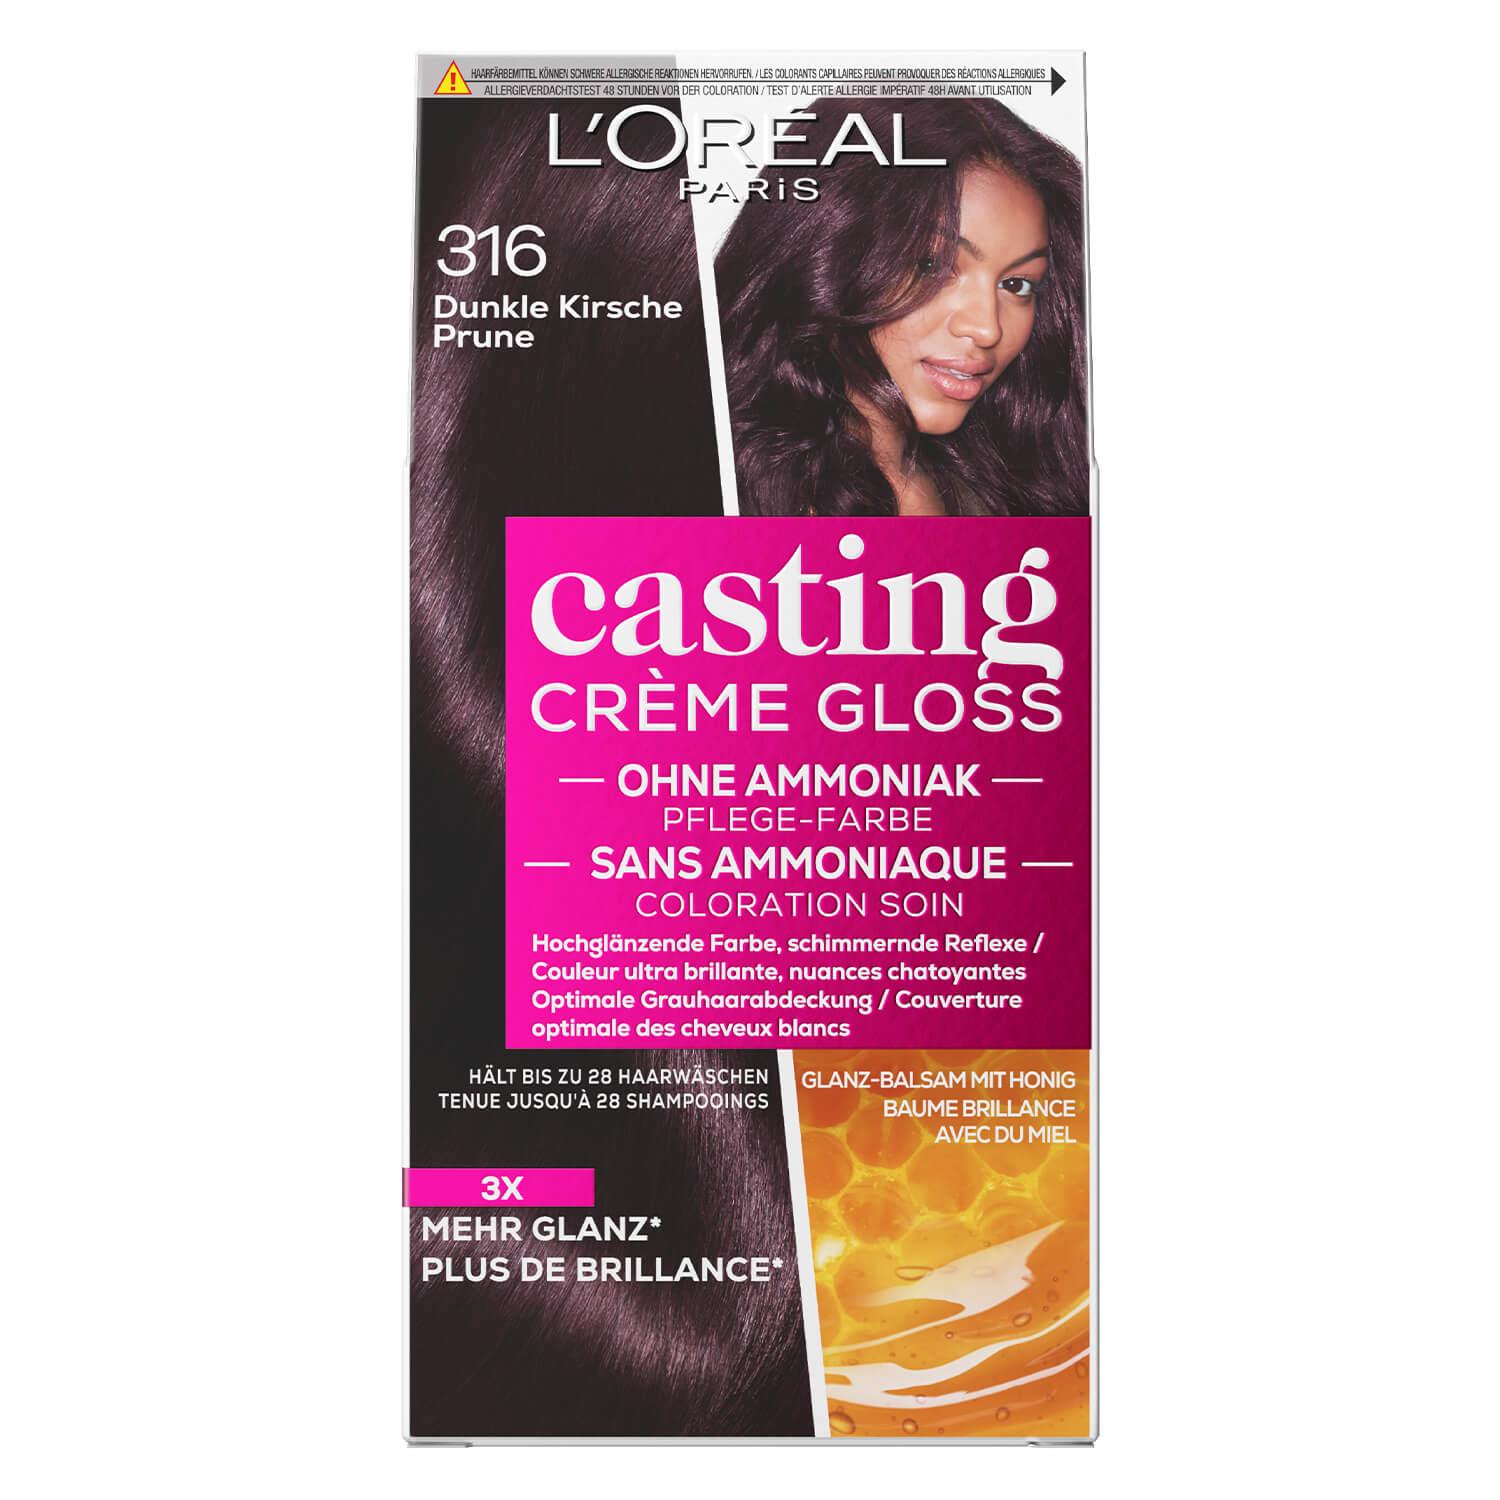 LOréal Casting - Crème Gloss 316 Dunkle Kirsche